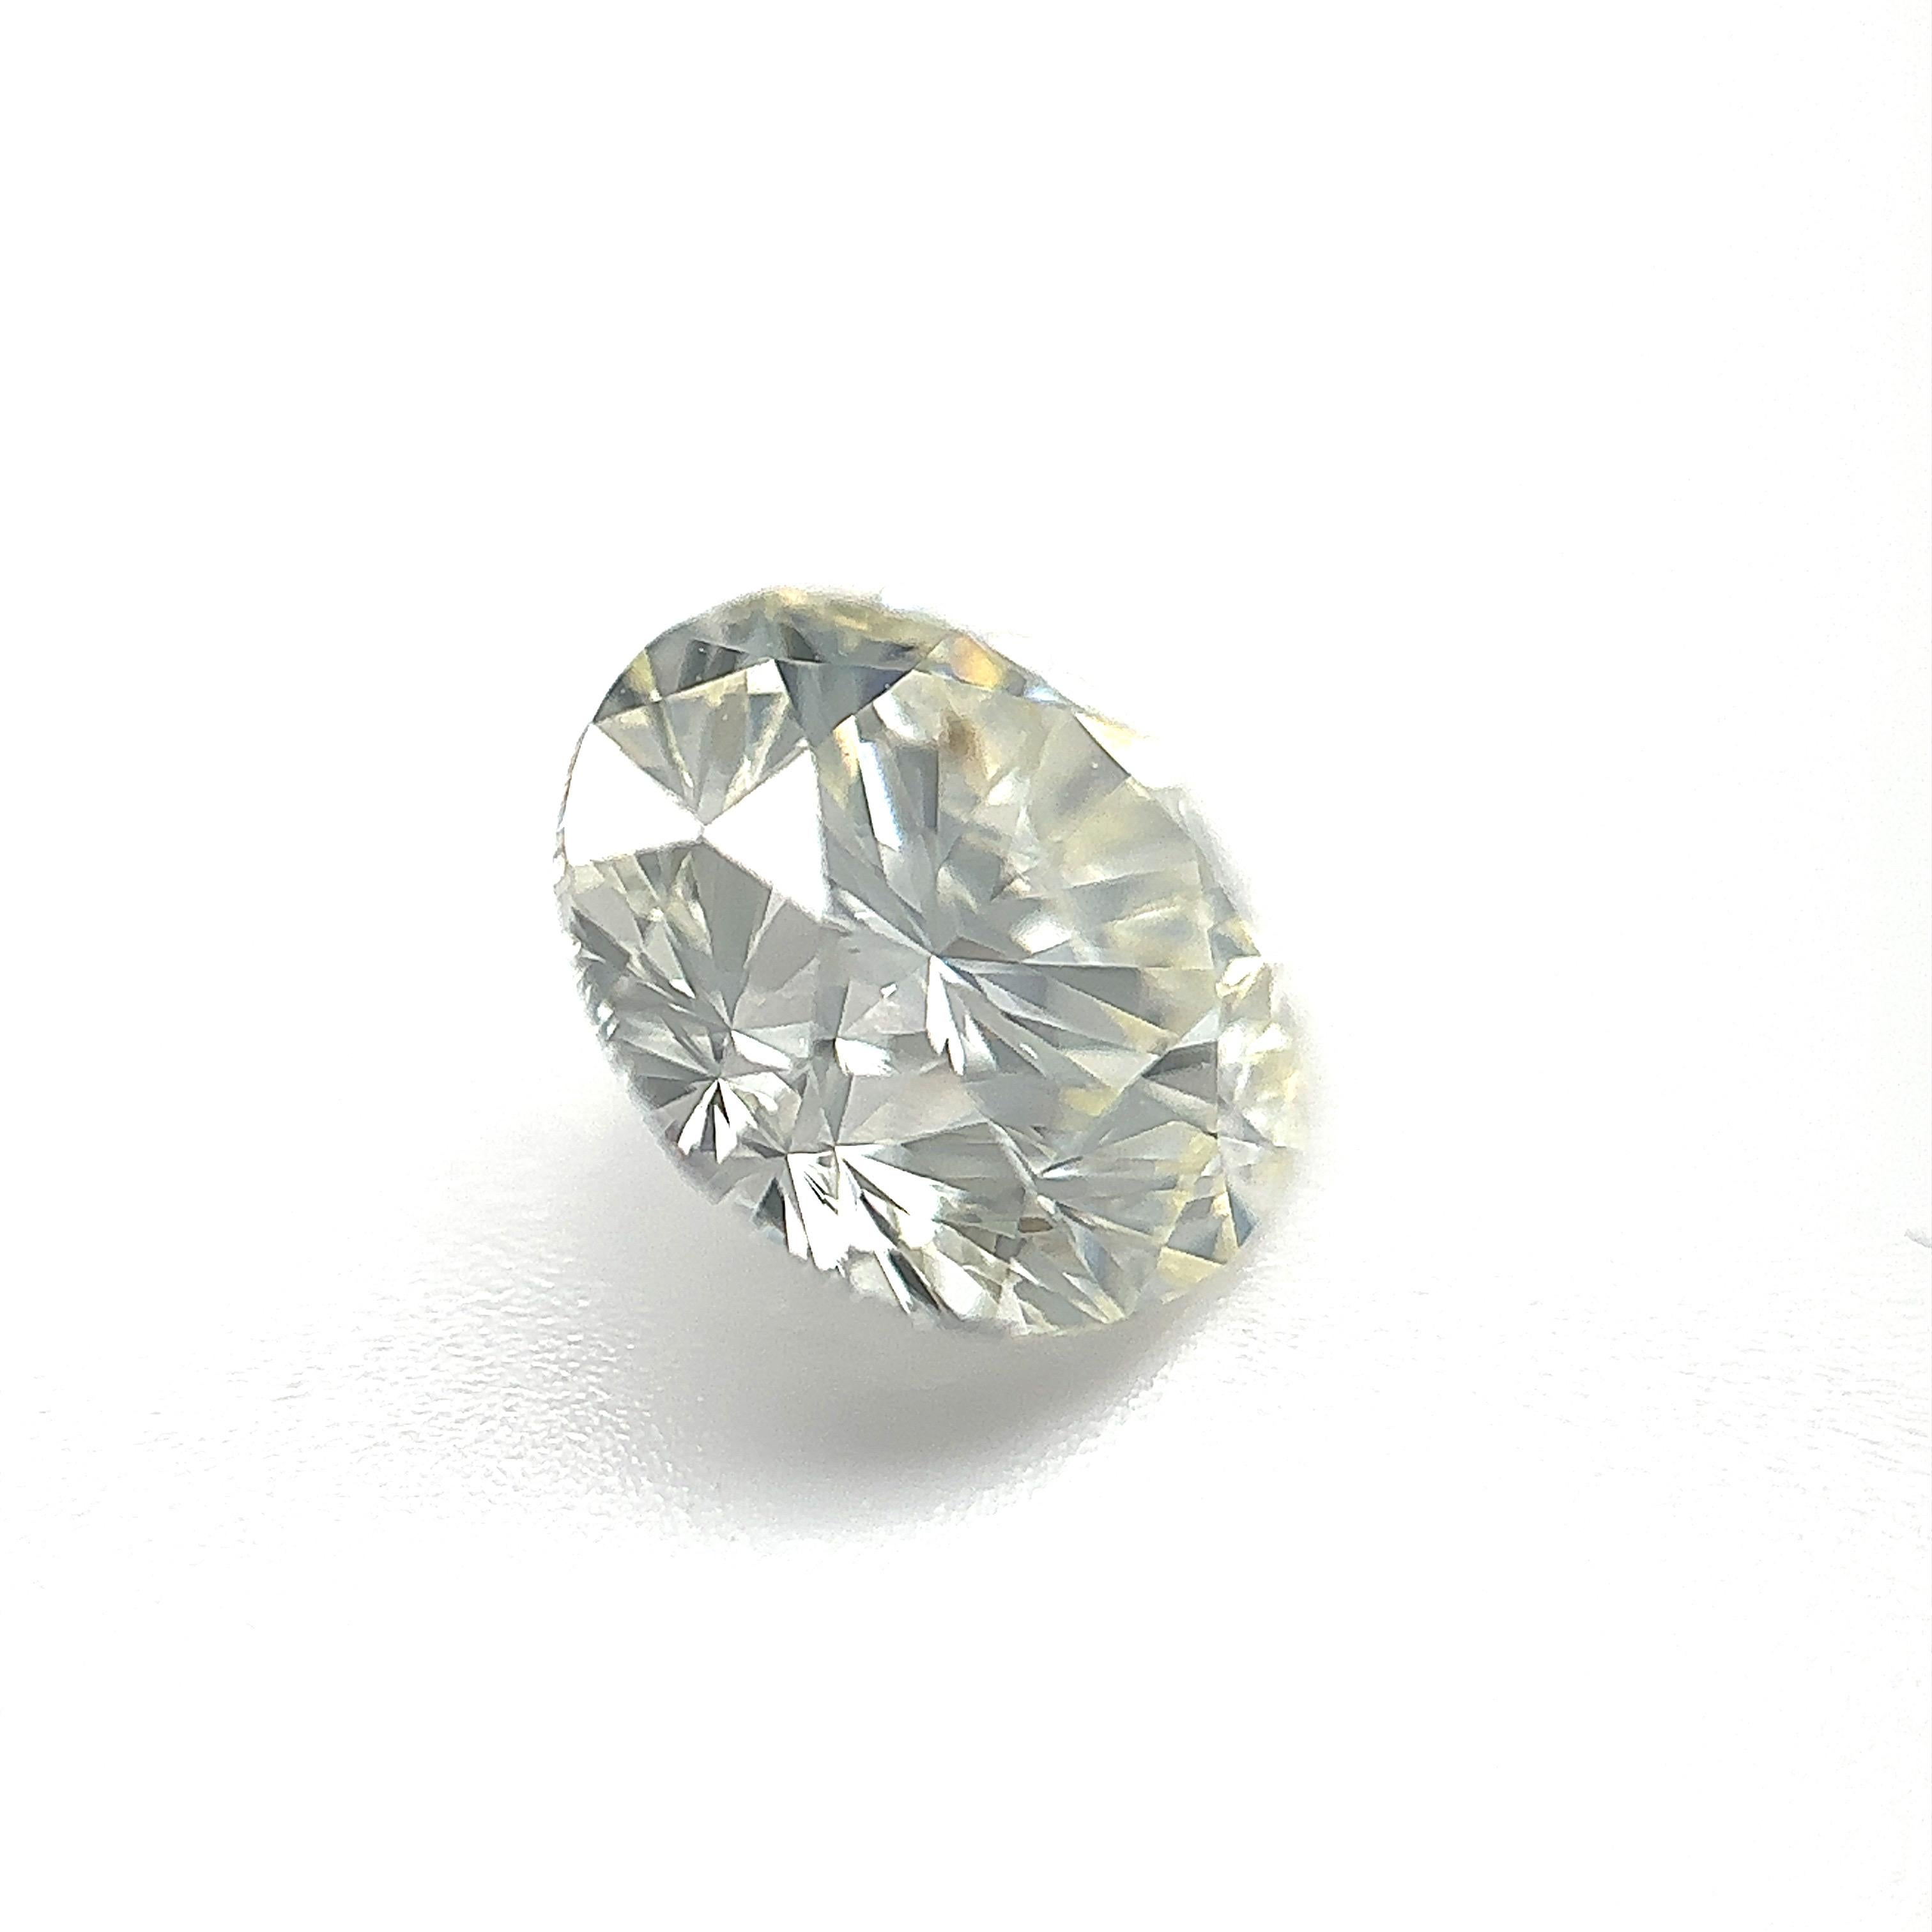 GIA Certified 1.71 Carat Round Brilliant Natural Diamond Loose Stone (Customization Option)

Couleur : J
Clarté : VS2

Idéal pour les bagues de fiançailles, les alliances, les colliers et les boucles d'oreilles en diamant. Contactez-nous pour